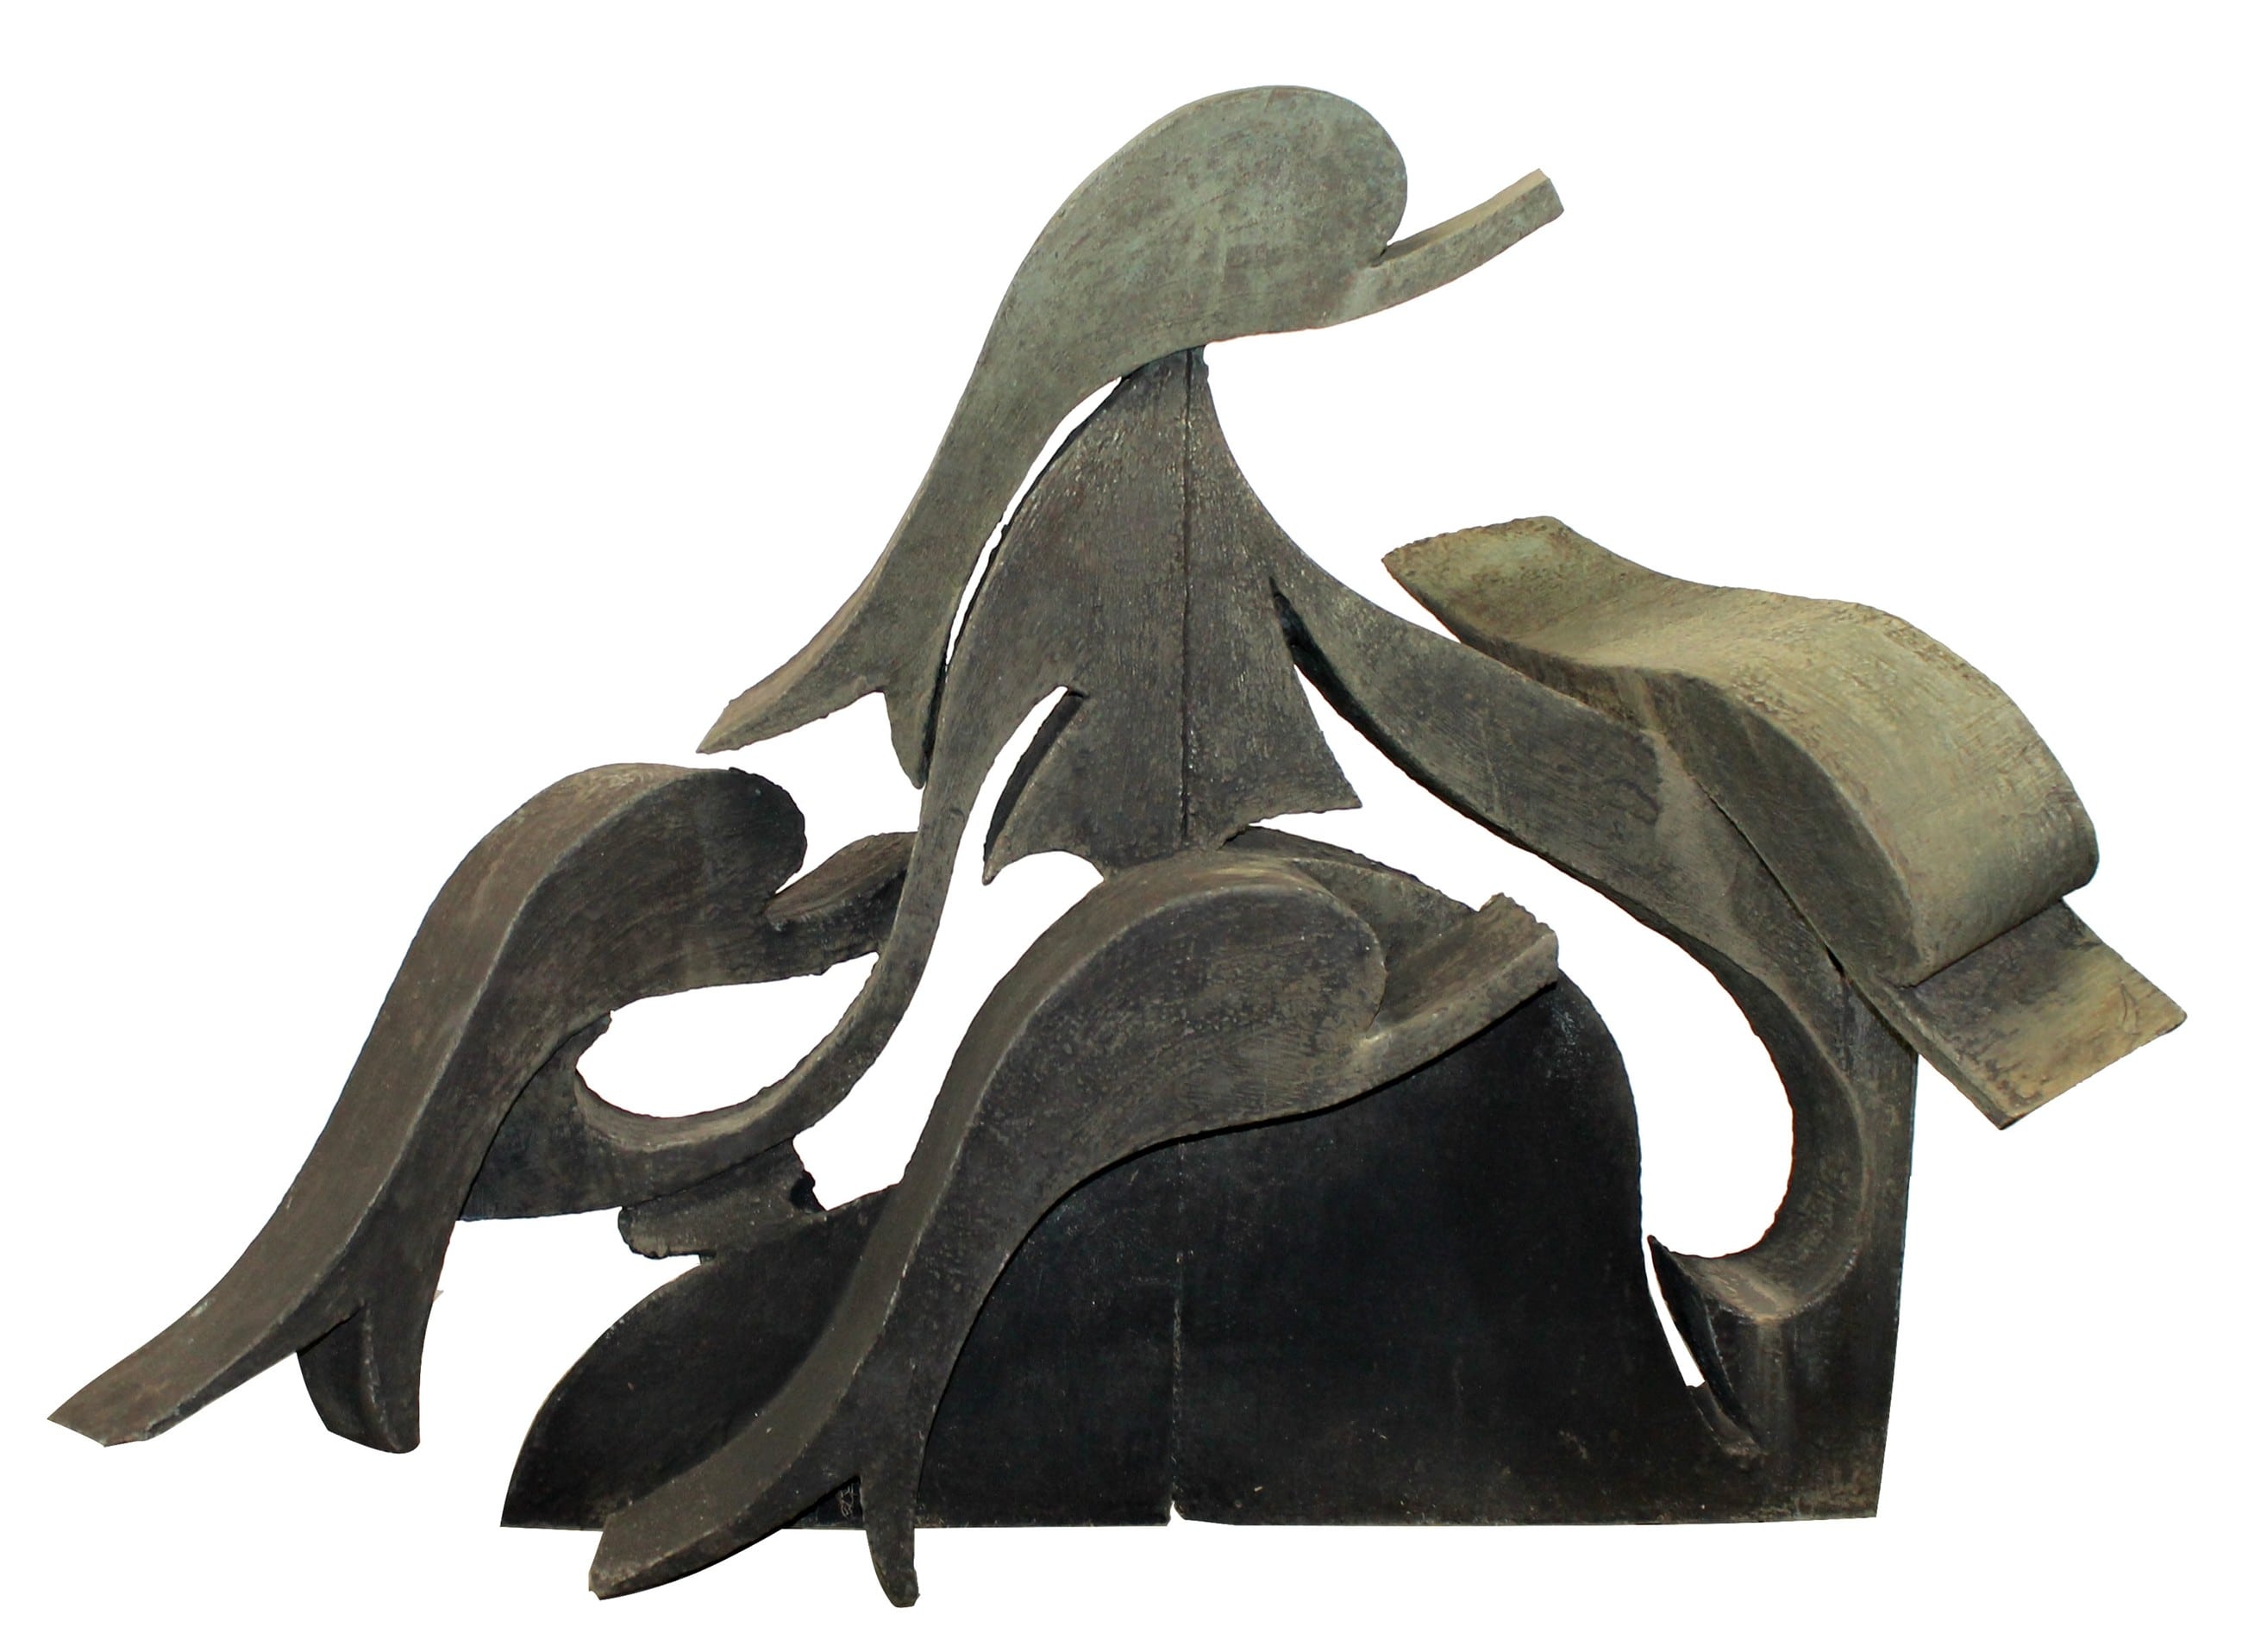 Reuben Nakian (American, 1897-1986) bronze sculpture of dolphins